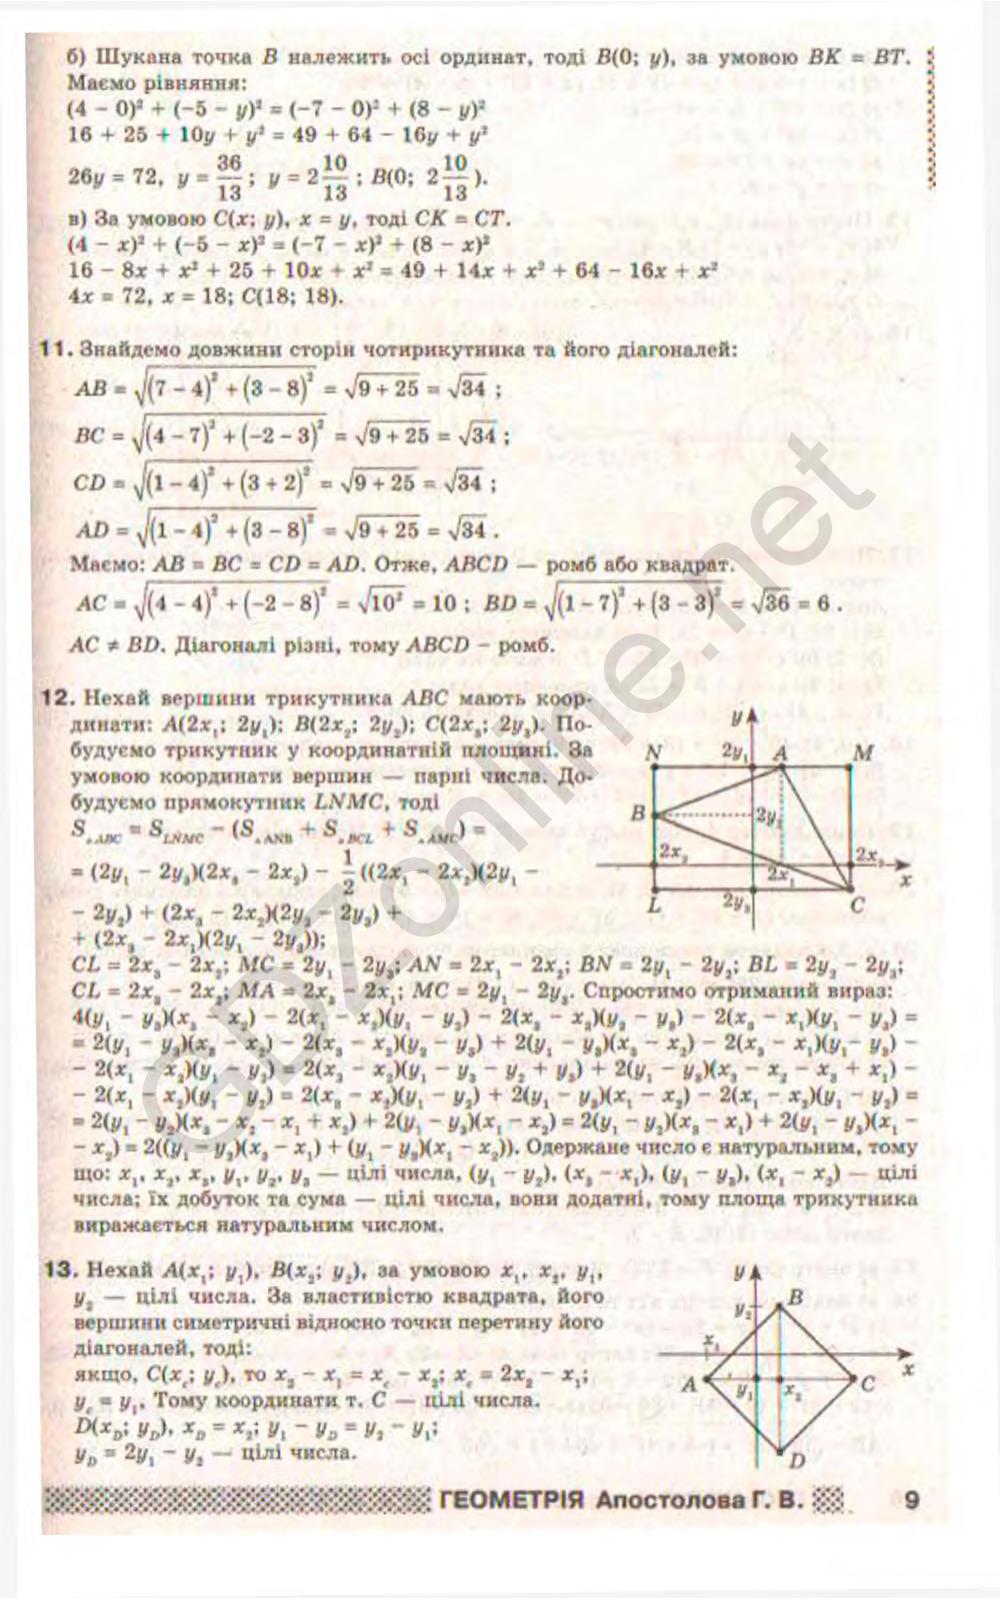 Решебник к геометрии апостолова 9 класс с расписанными заданиями